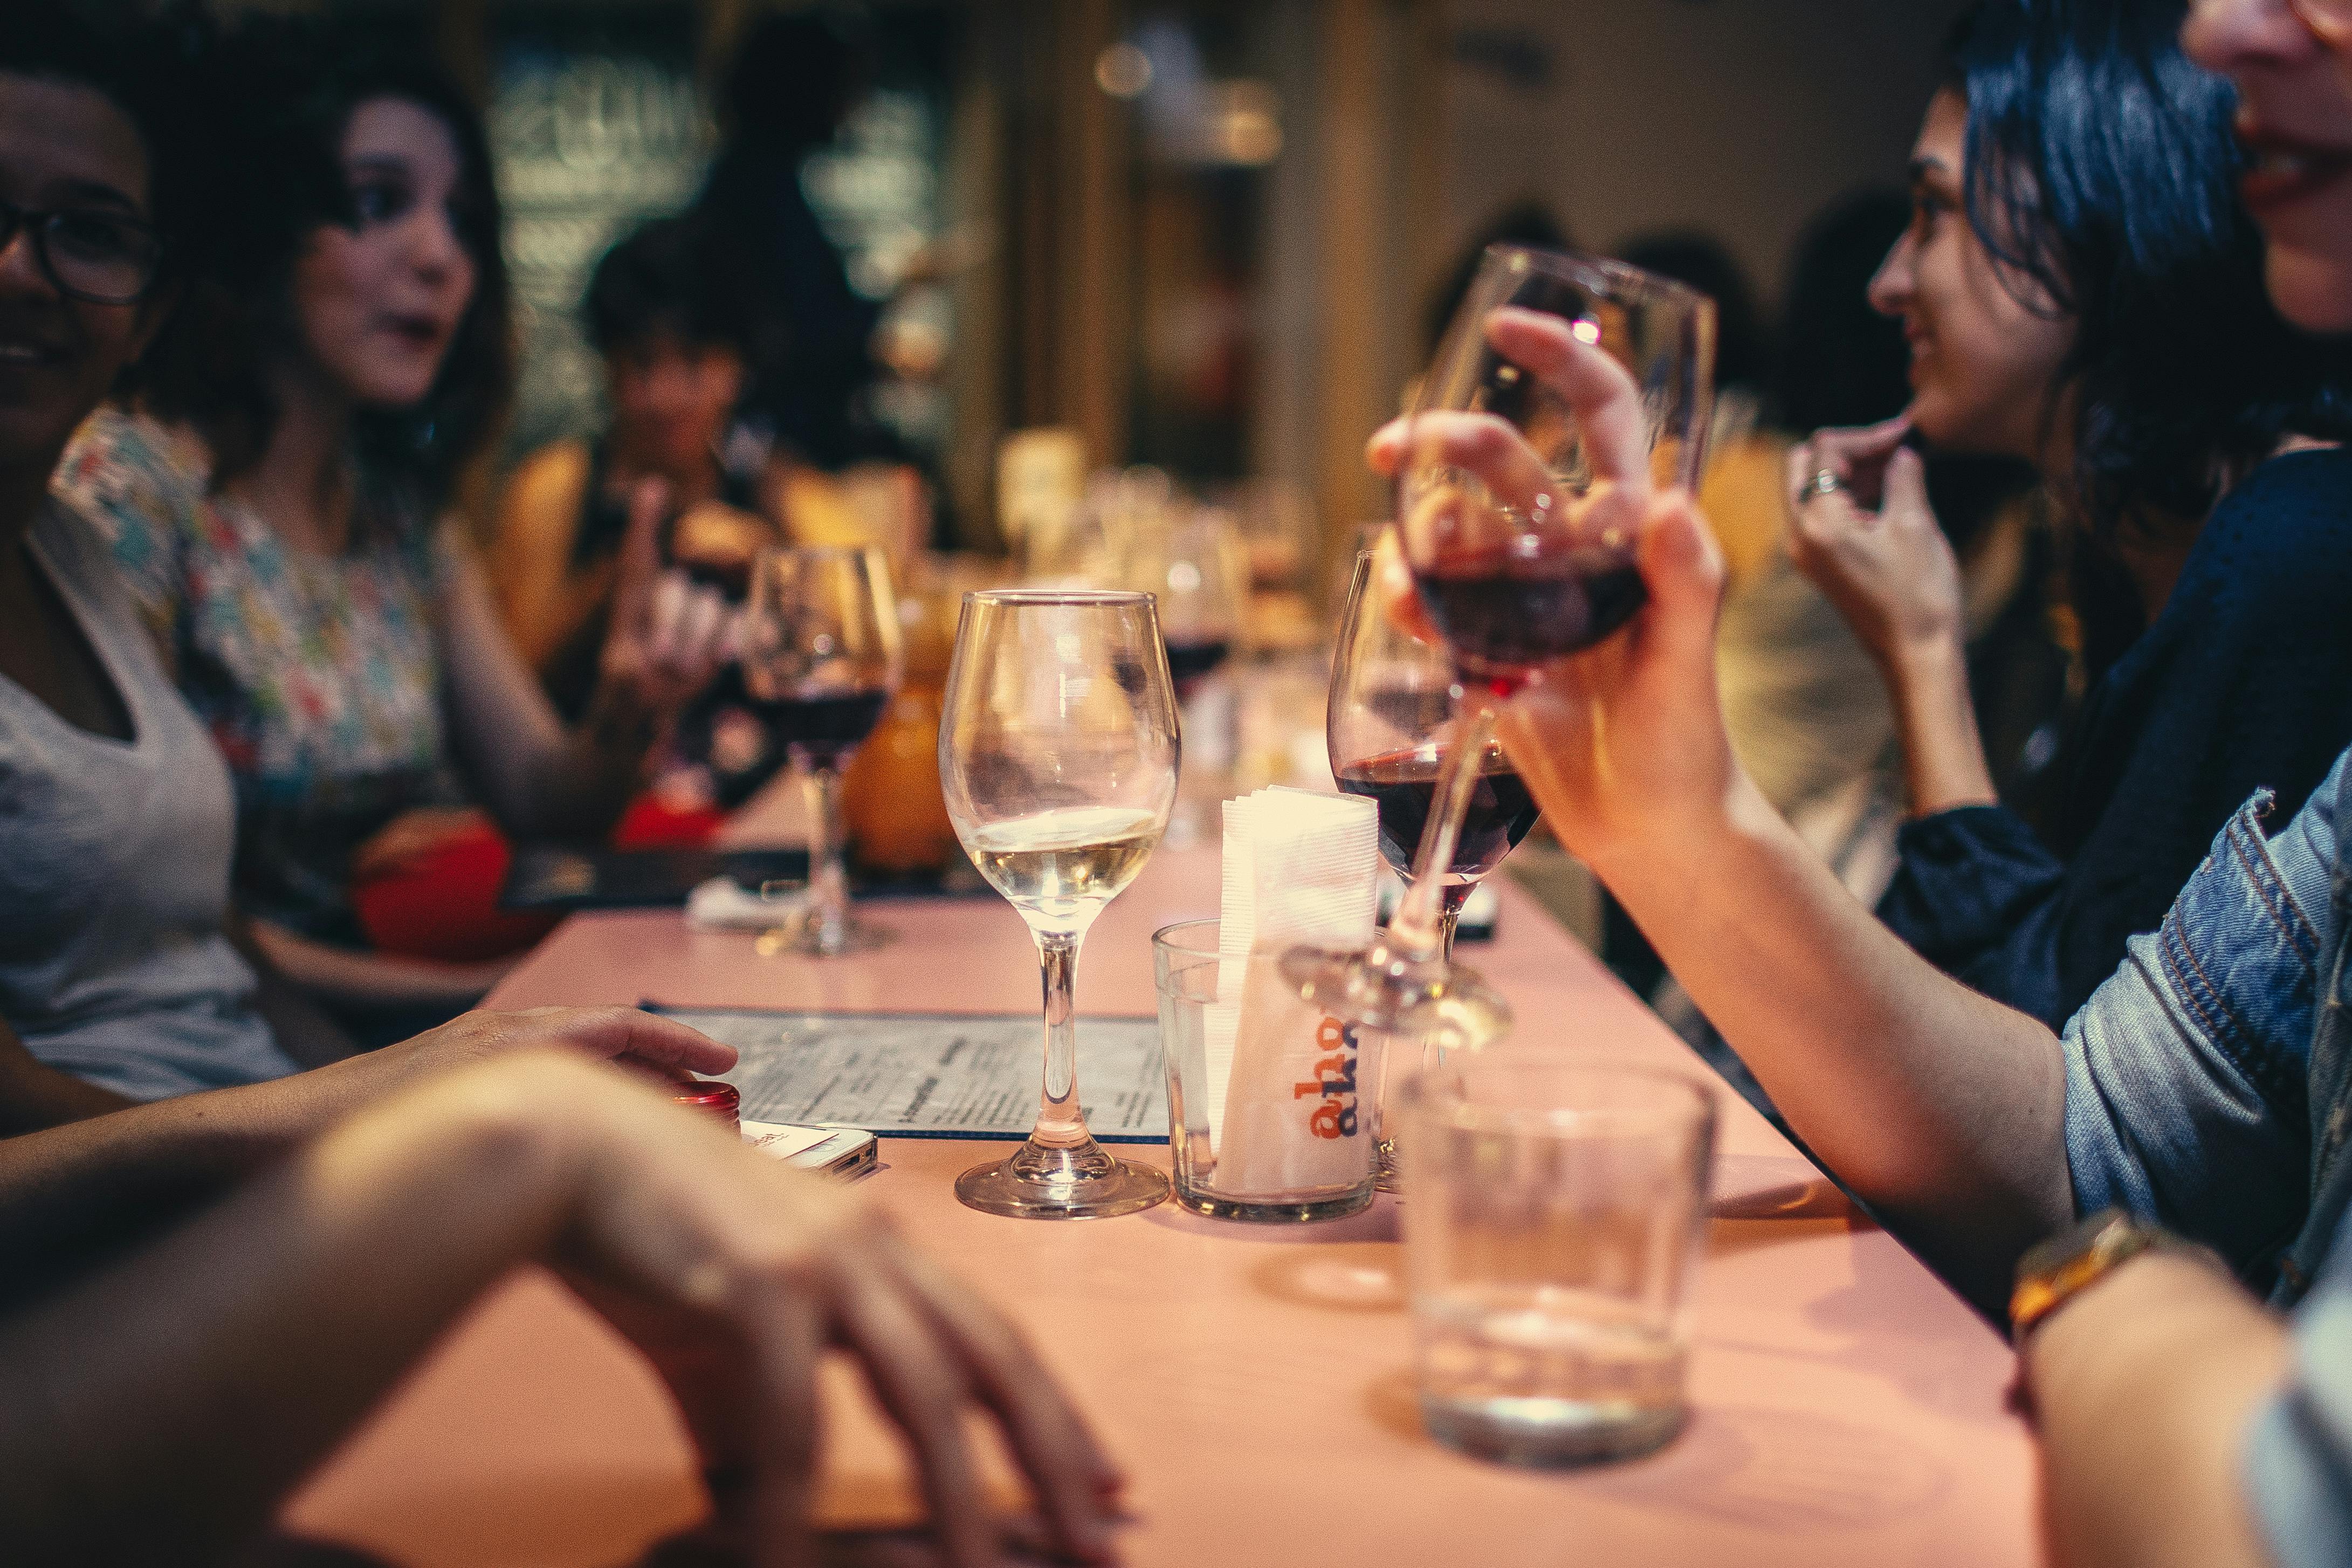 Eine Gruppe von Menschen bei einem Drink in einem Restaurant | Quelle: Pexels